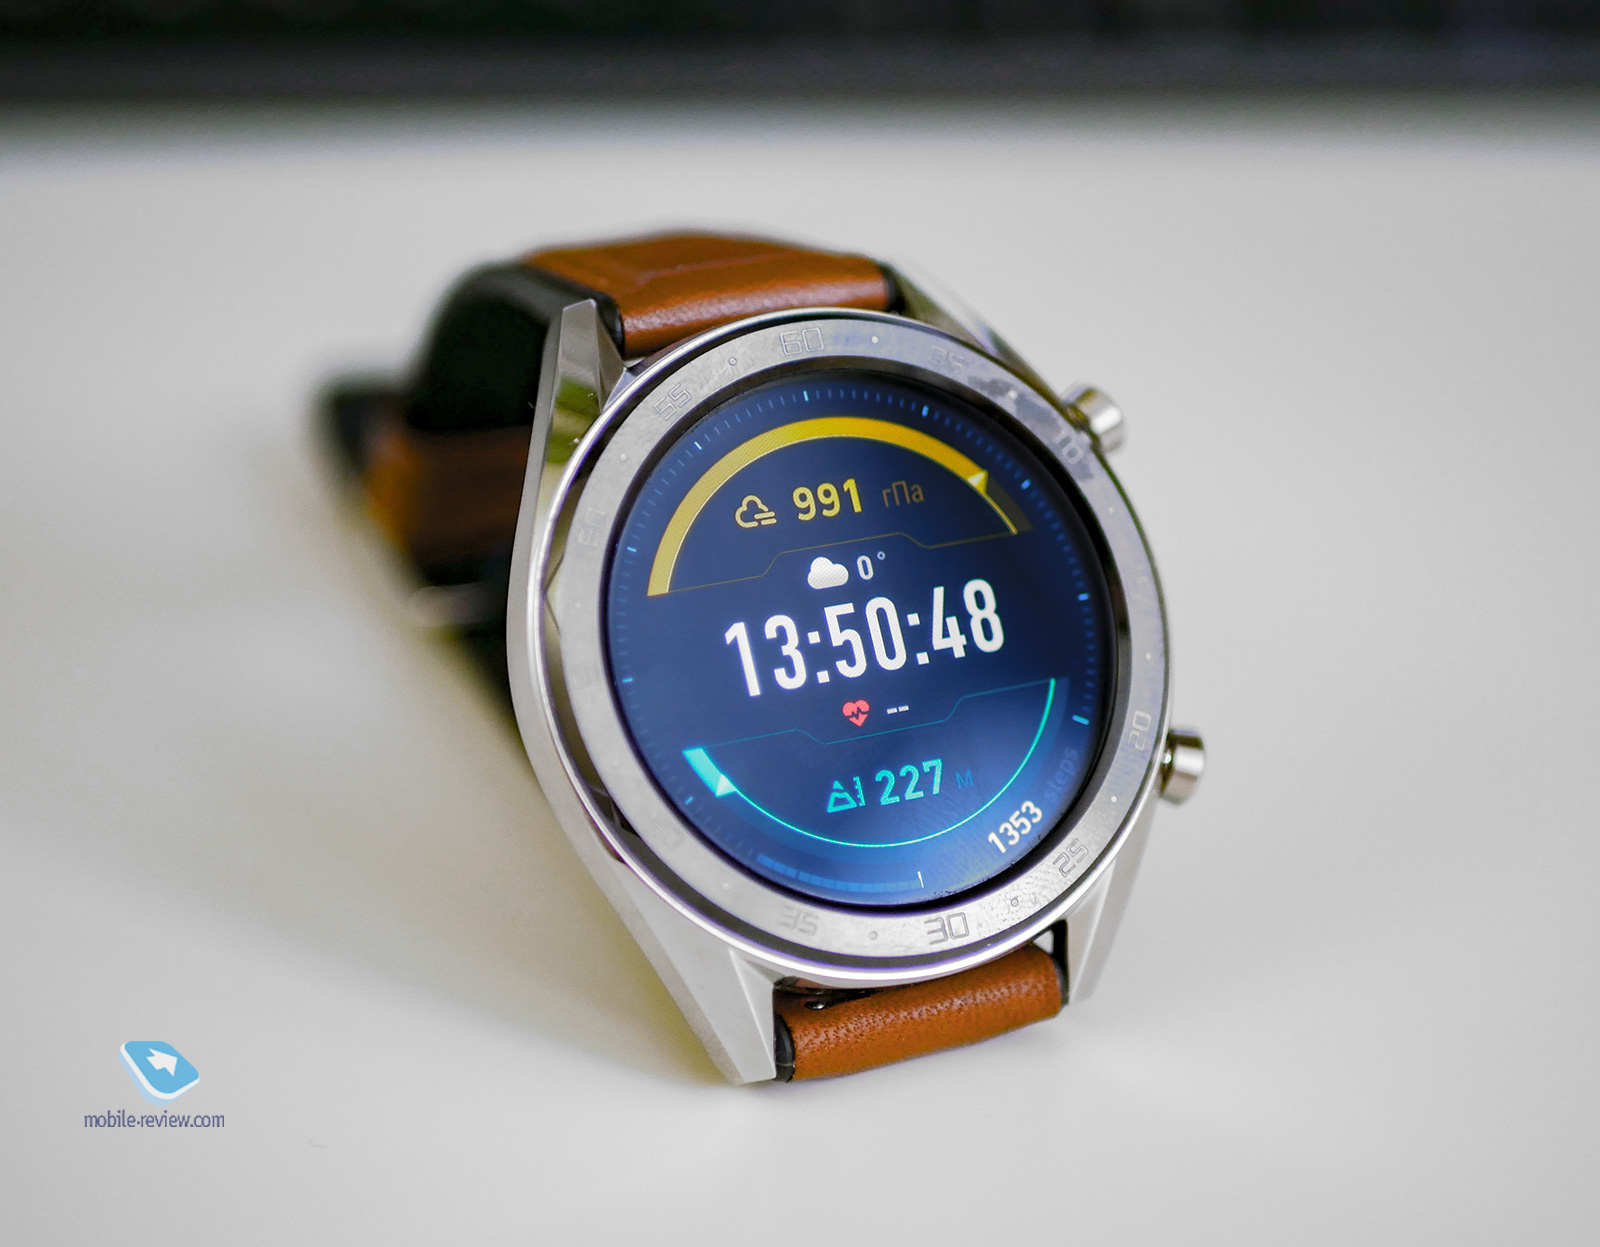 Опыт использования Huawei Watch GT